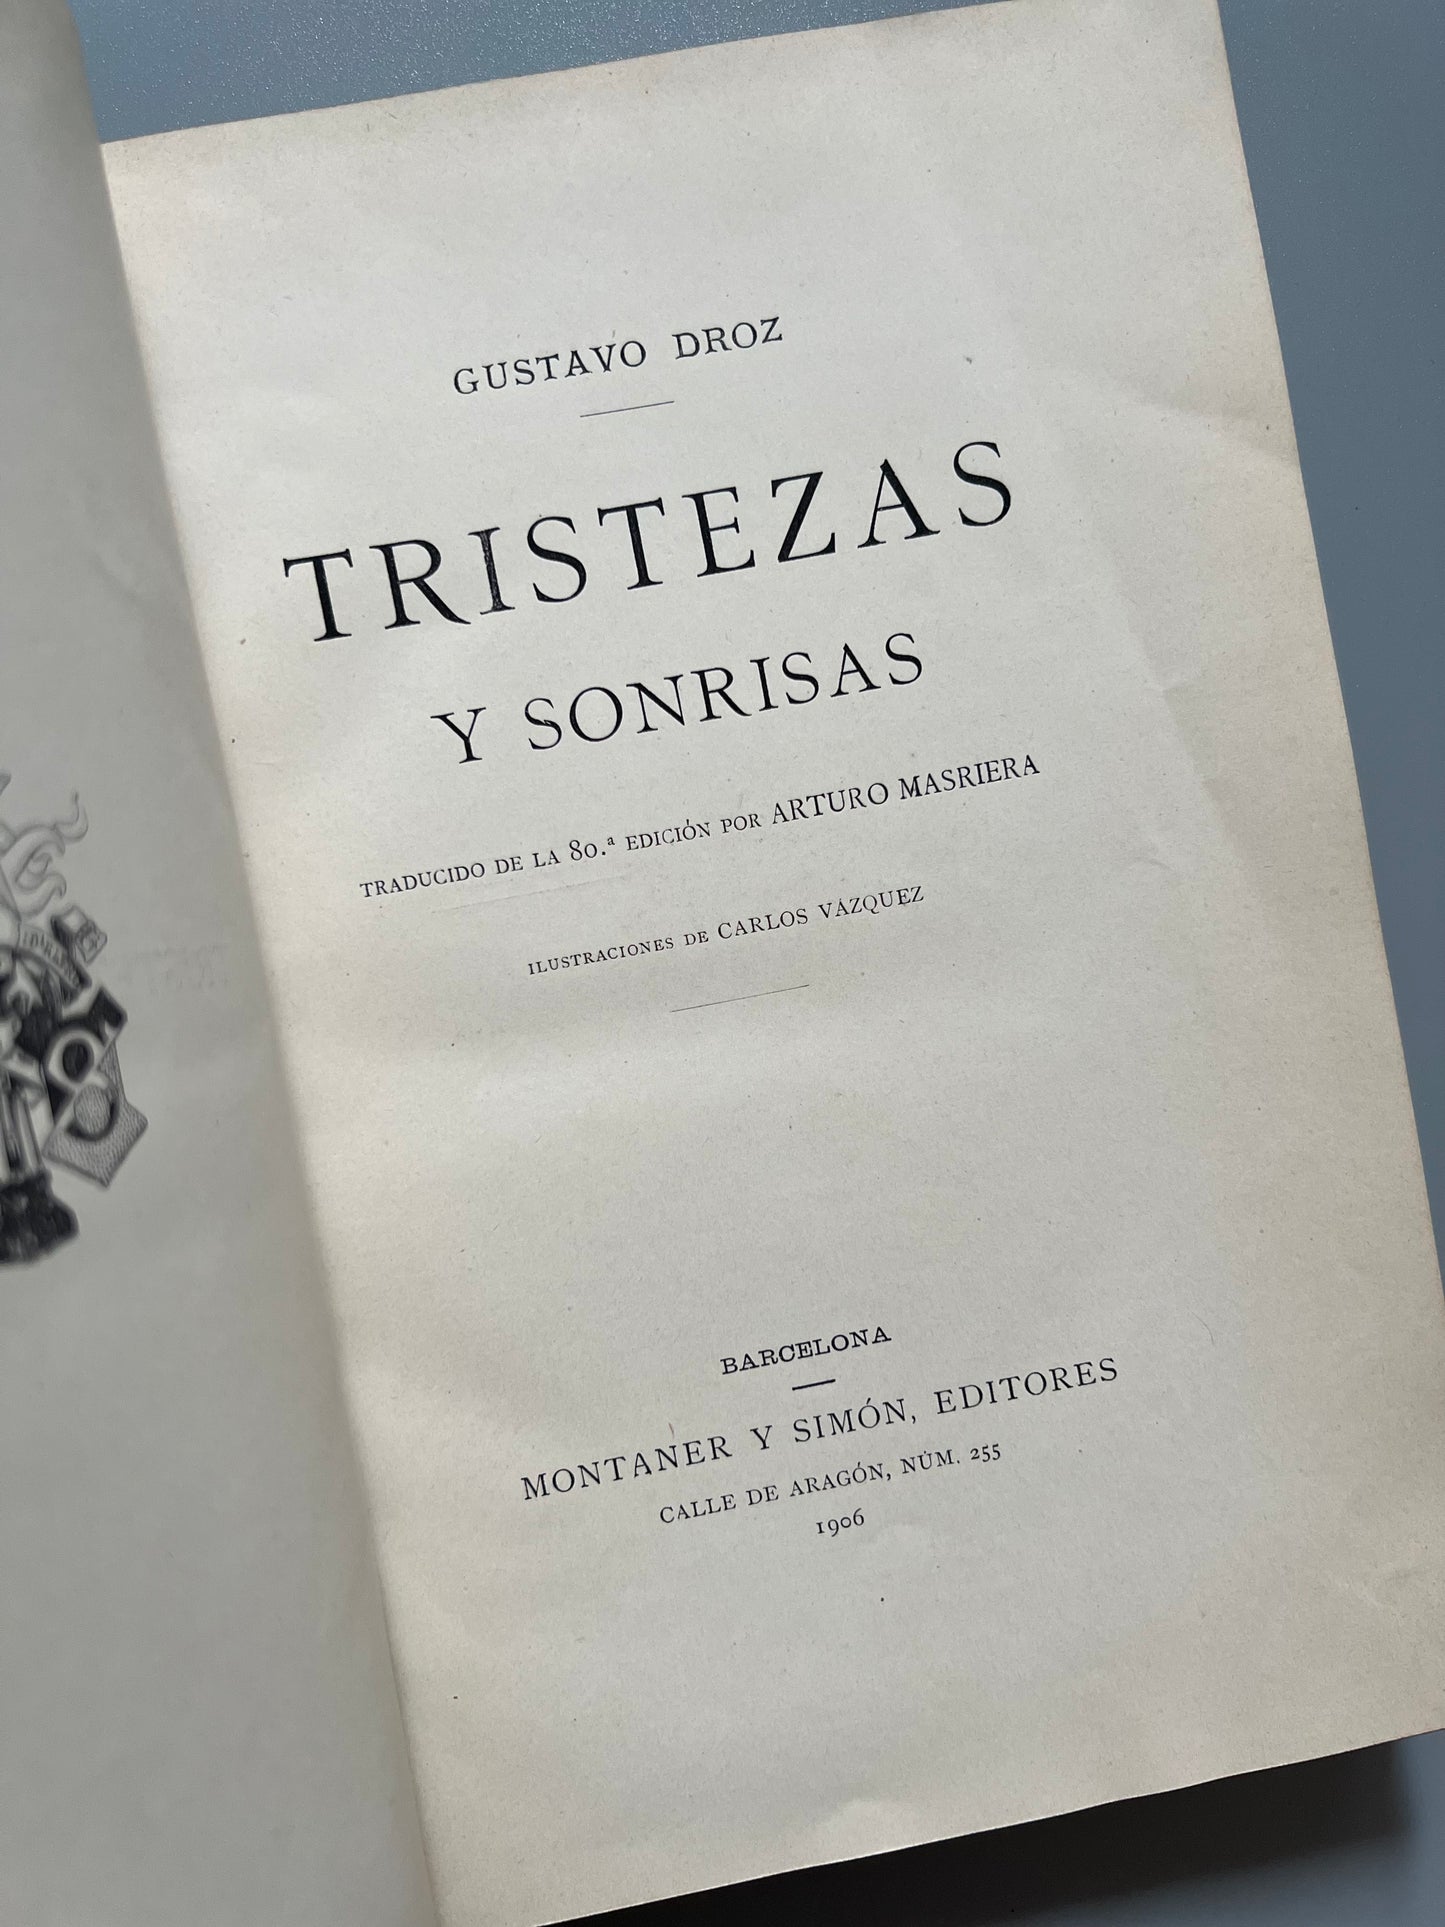 Tristezas y sonrisas, Gustavo Droz - Montaner y Simón, 1906